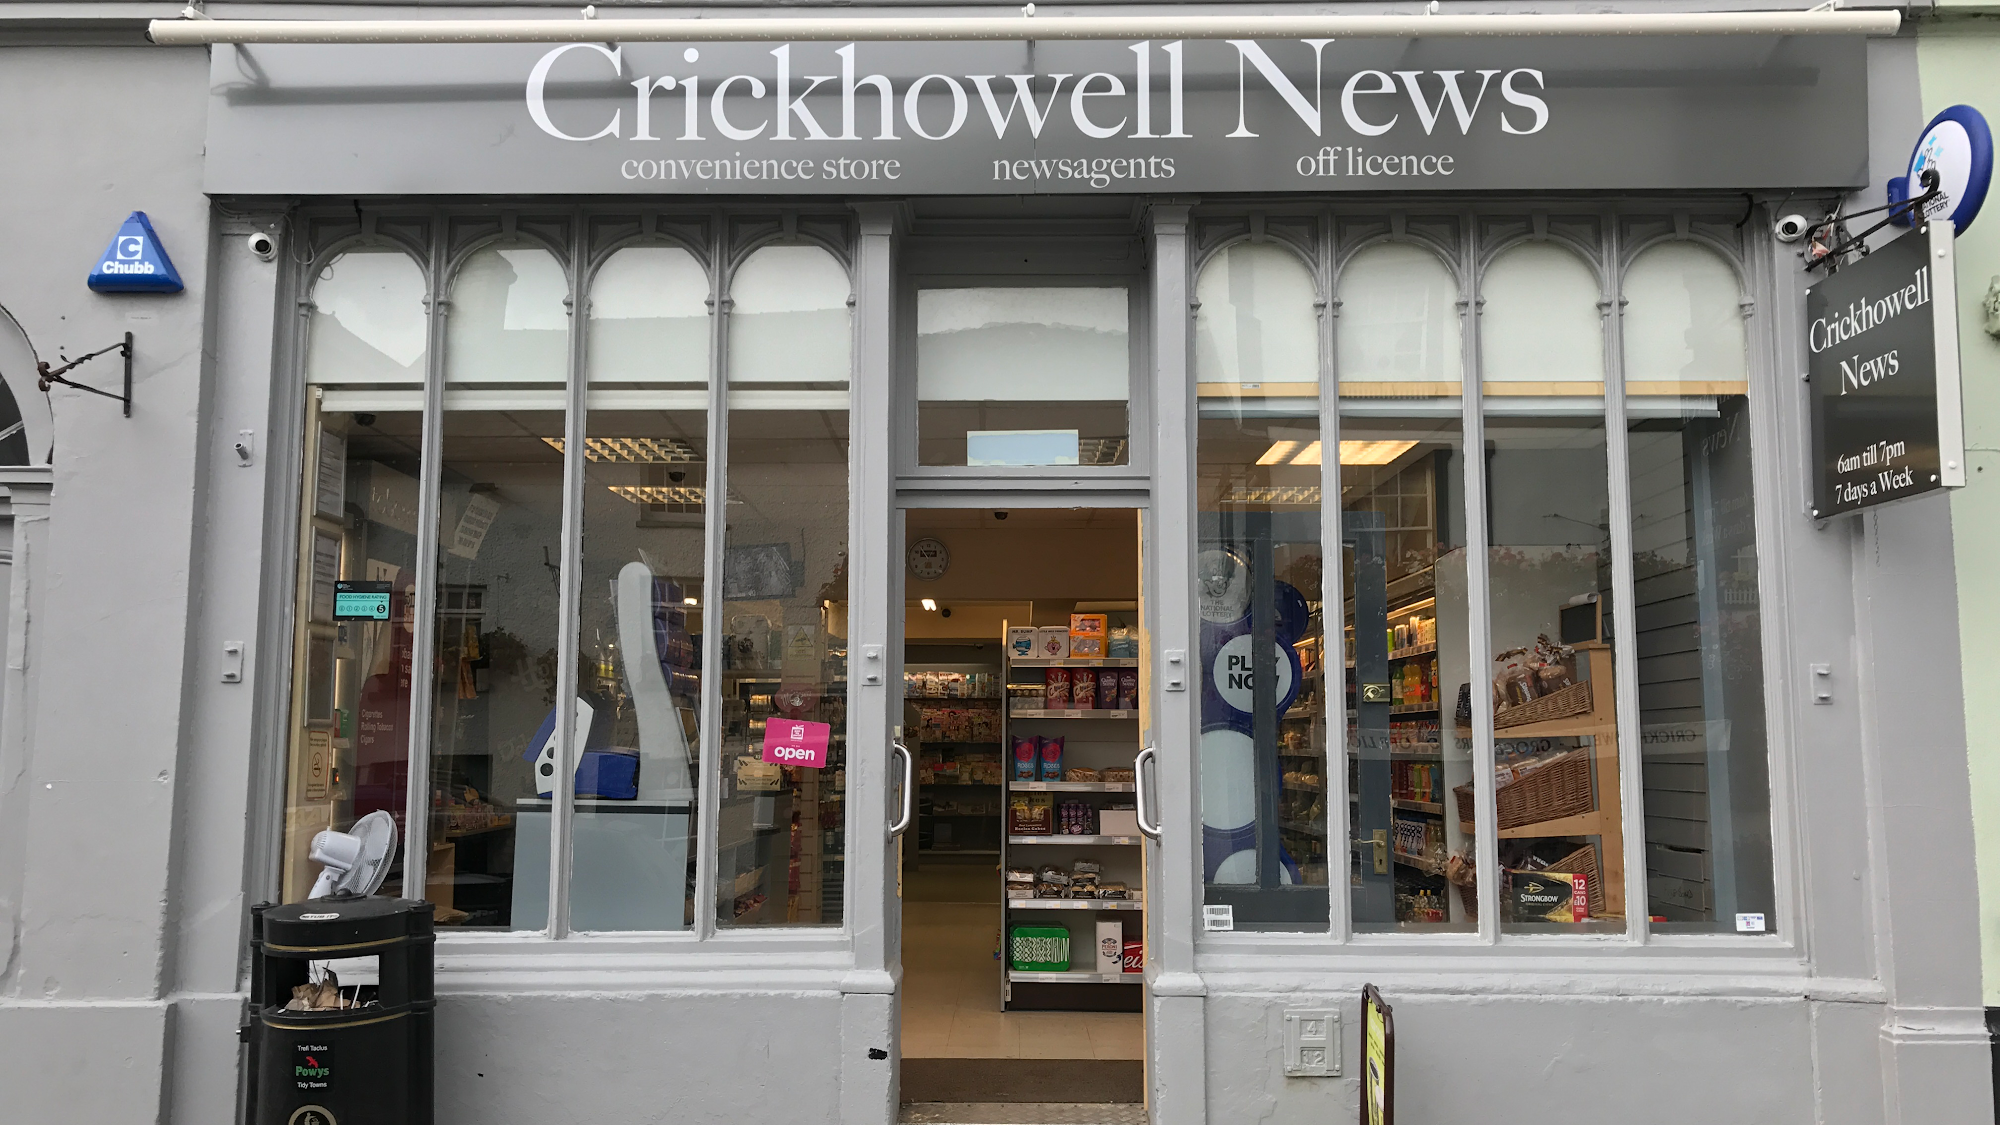 Crickhowell News